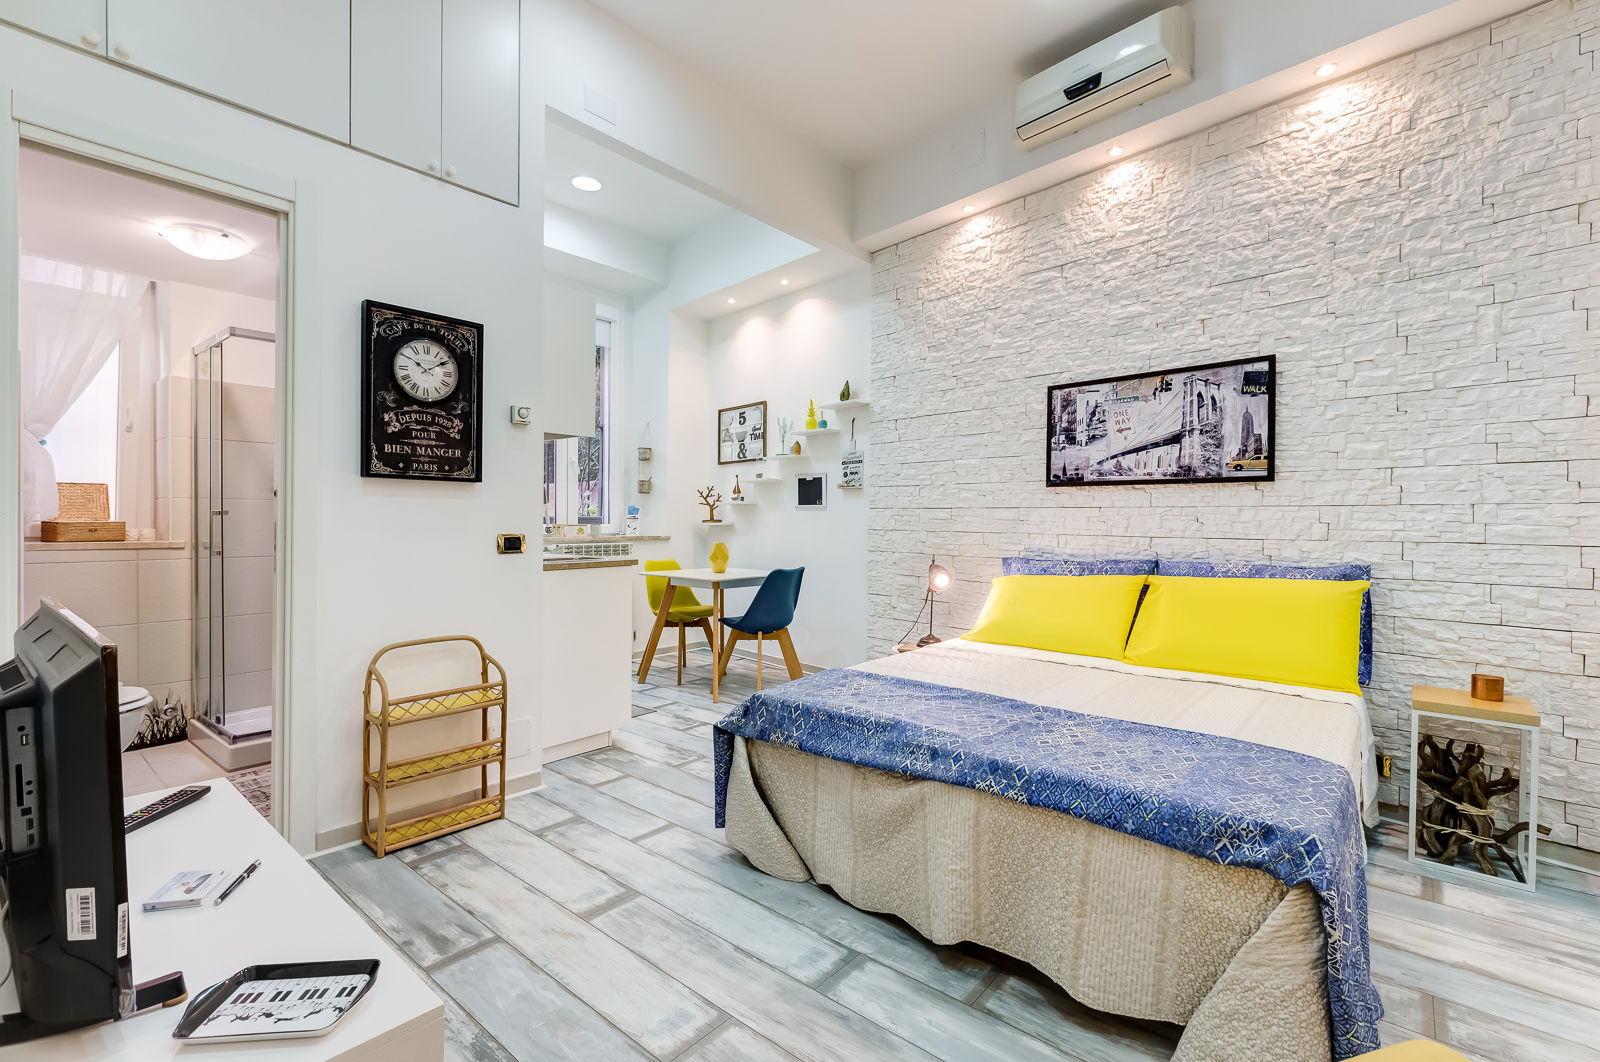 Mini Appartamento Turistico - Roma, Luca Tranquilli - Fotografo Luca Tranquilli - Fotografo Bedroom